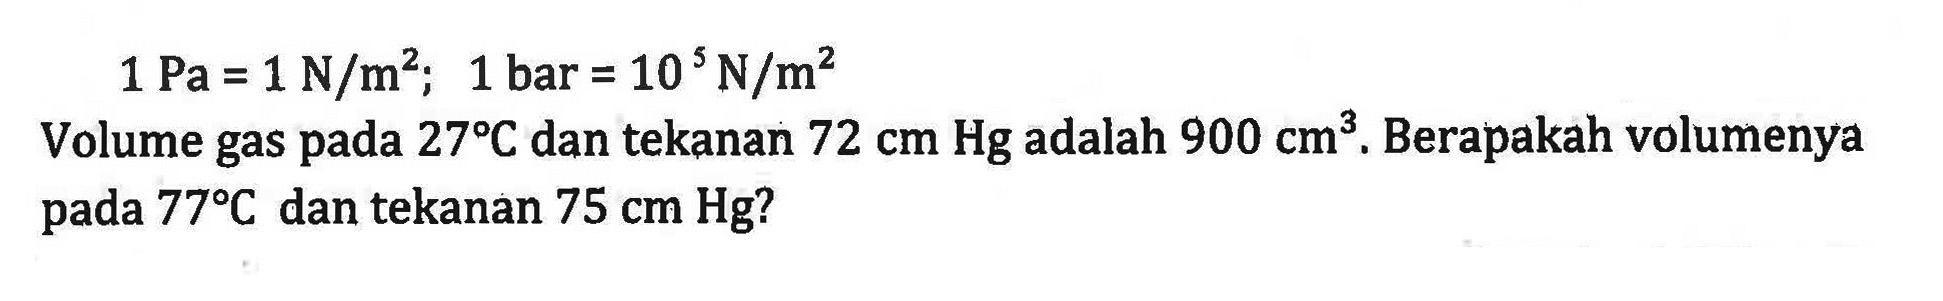 1 Pa = 1 N/m^2; 1 bar = 10^5 N/m^2 Volume gas pada 27C dan tekanan 72 cm Hg adalah 900 cm^3. Berapakah volumenya pada 77C dan tekanan 75 cm Hg?